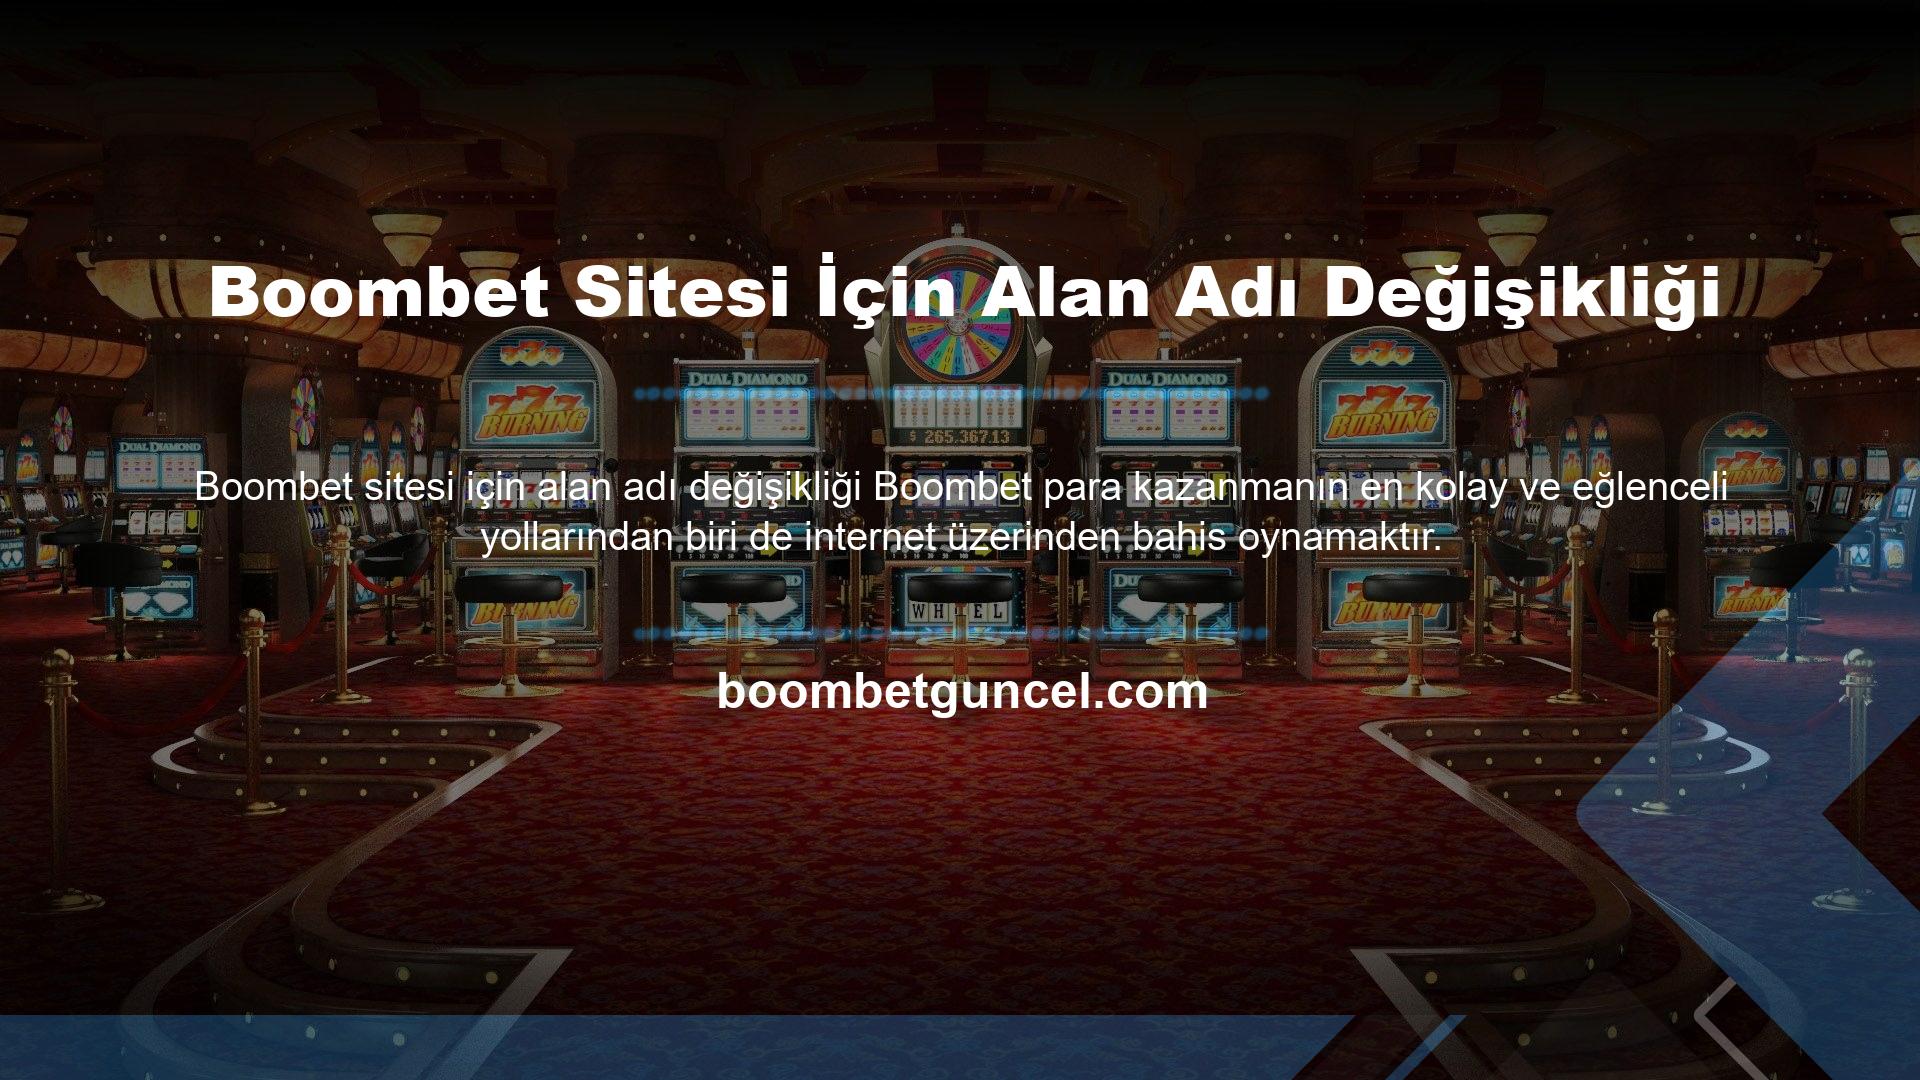 Ne yazık ki, Boombet gibi birçok kullanıcının favori casino siteleri ülkemizde engellenmiştir